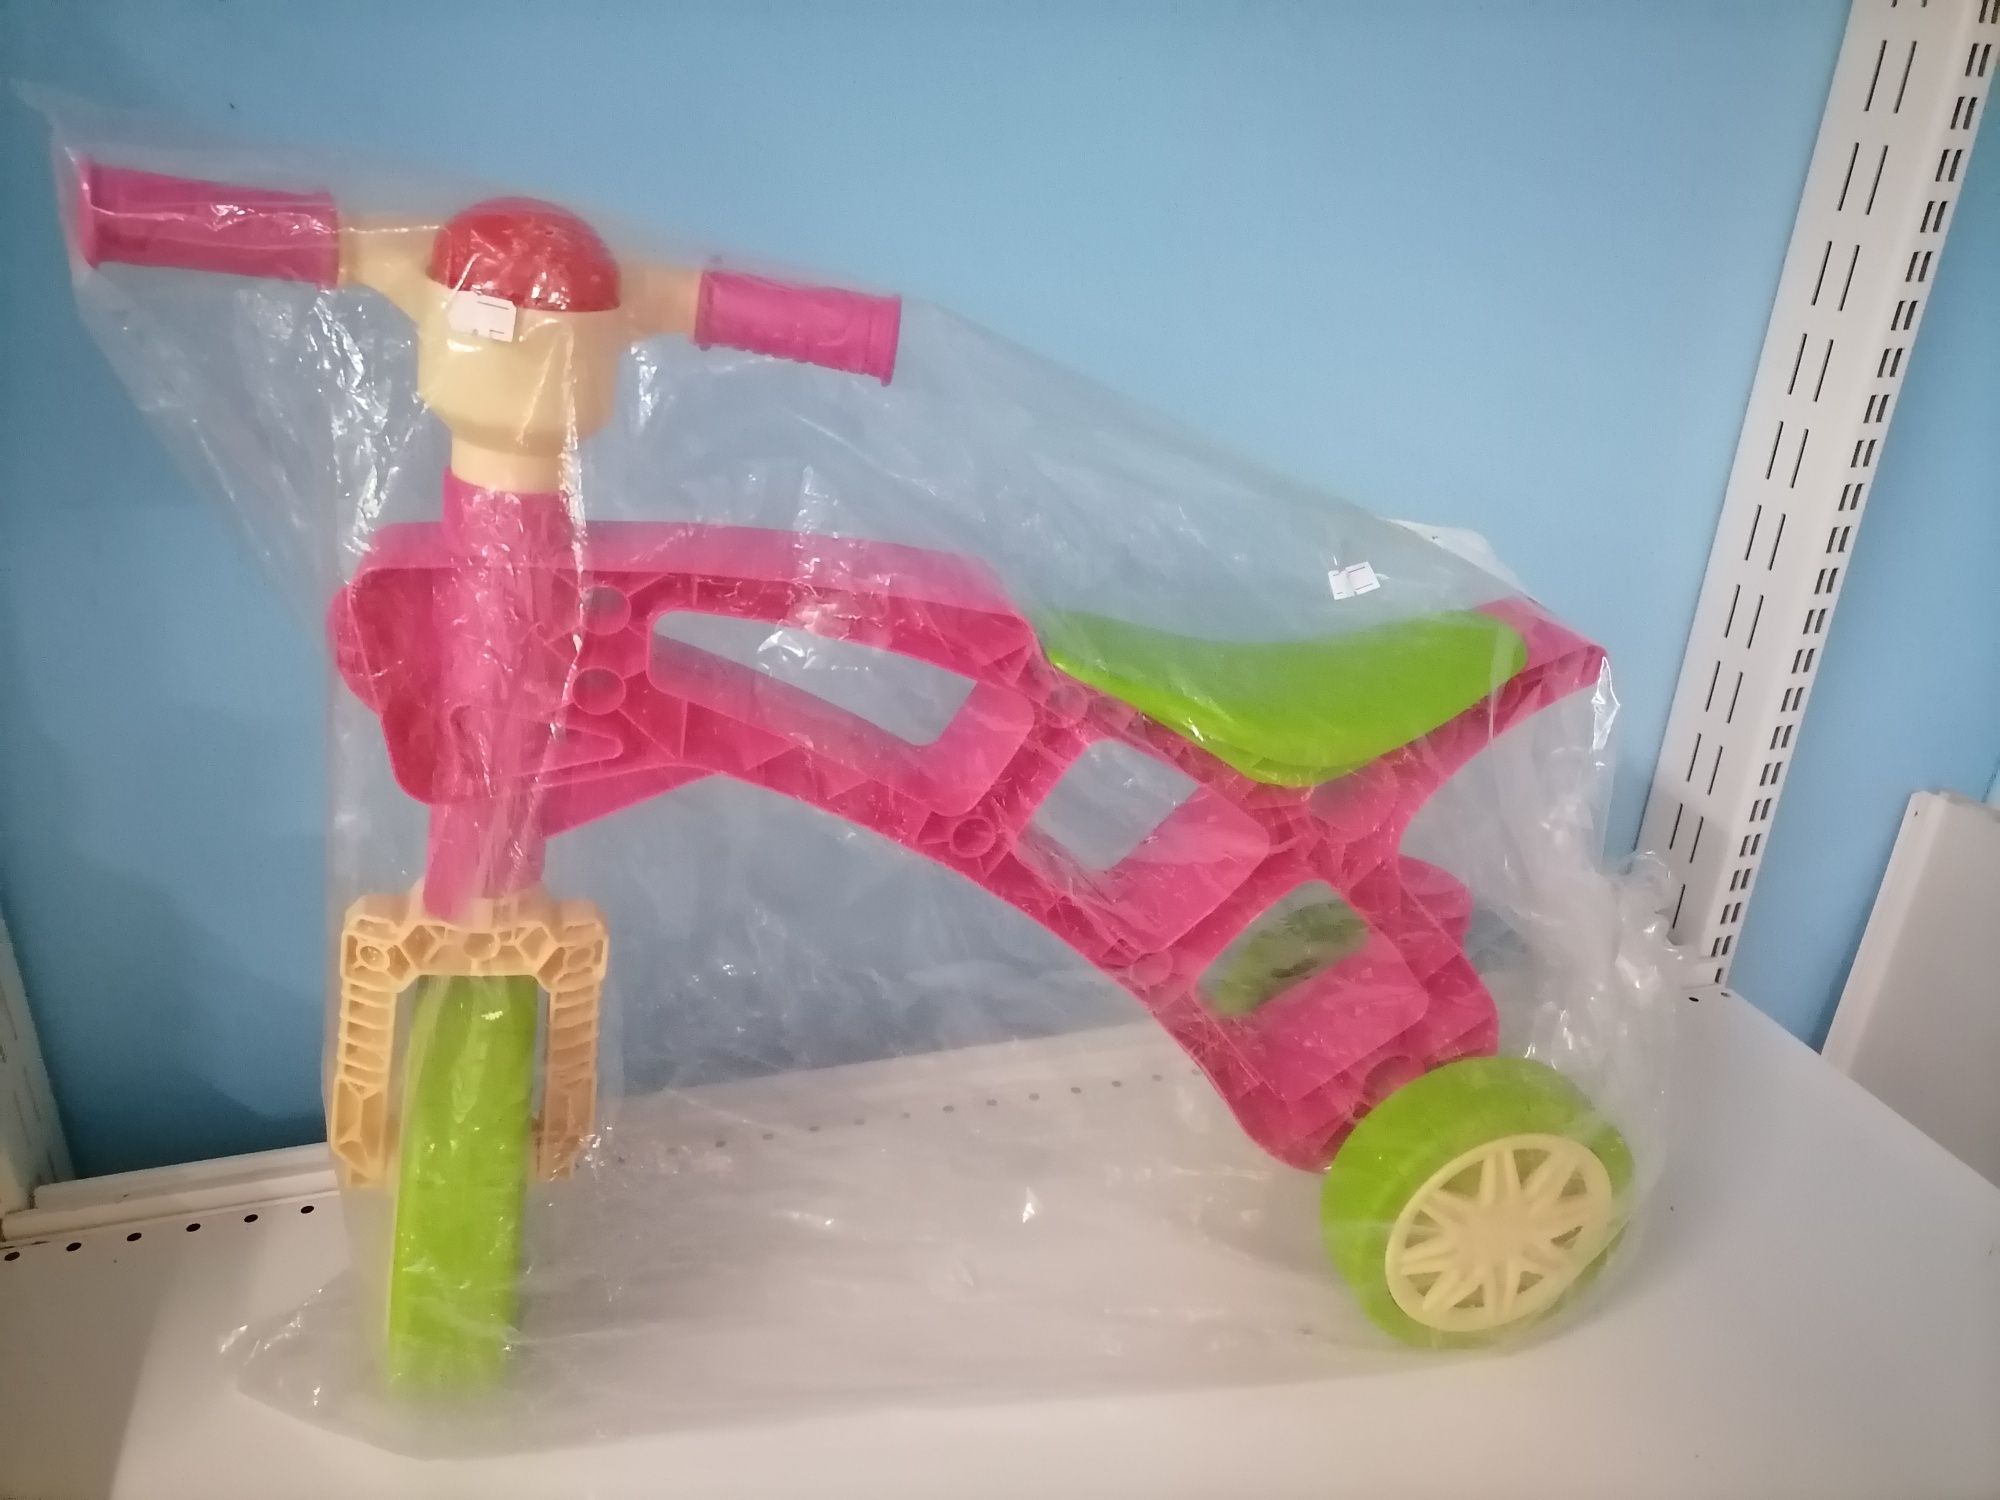 Дитячий ролоцикл